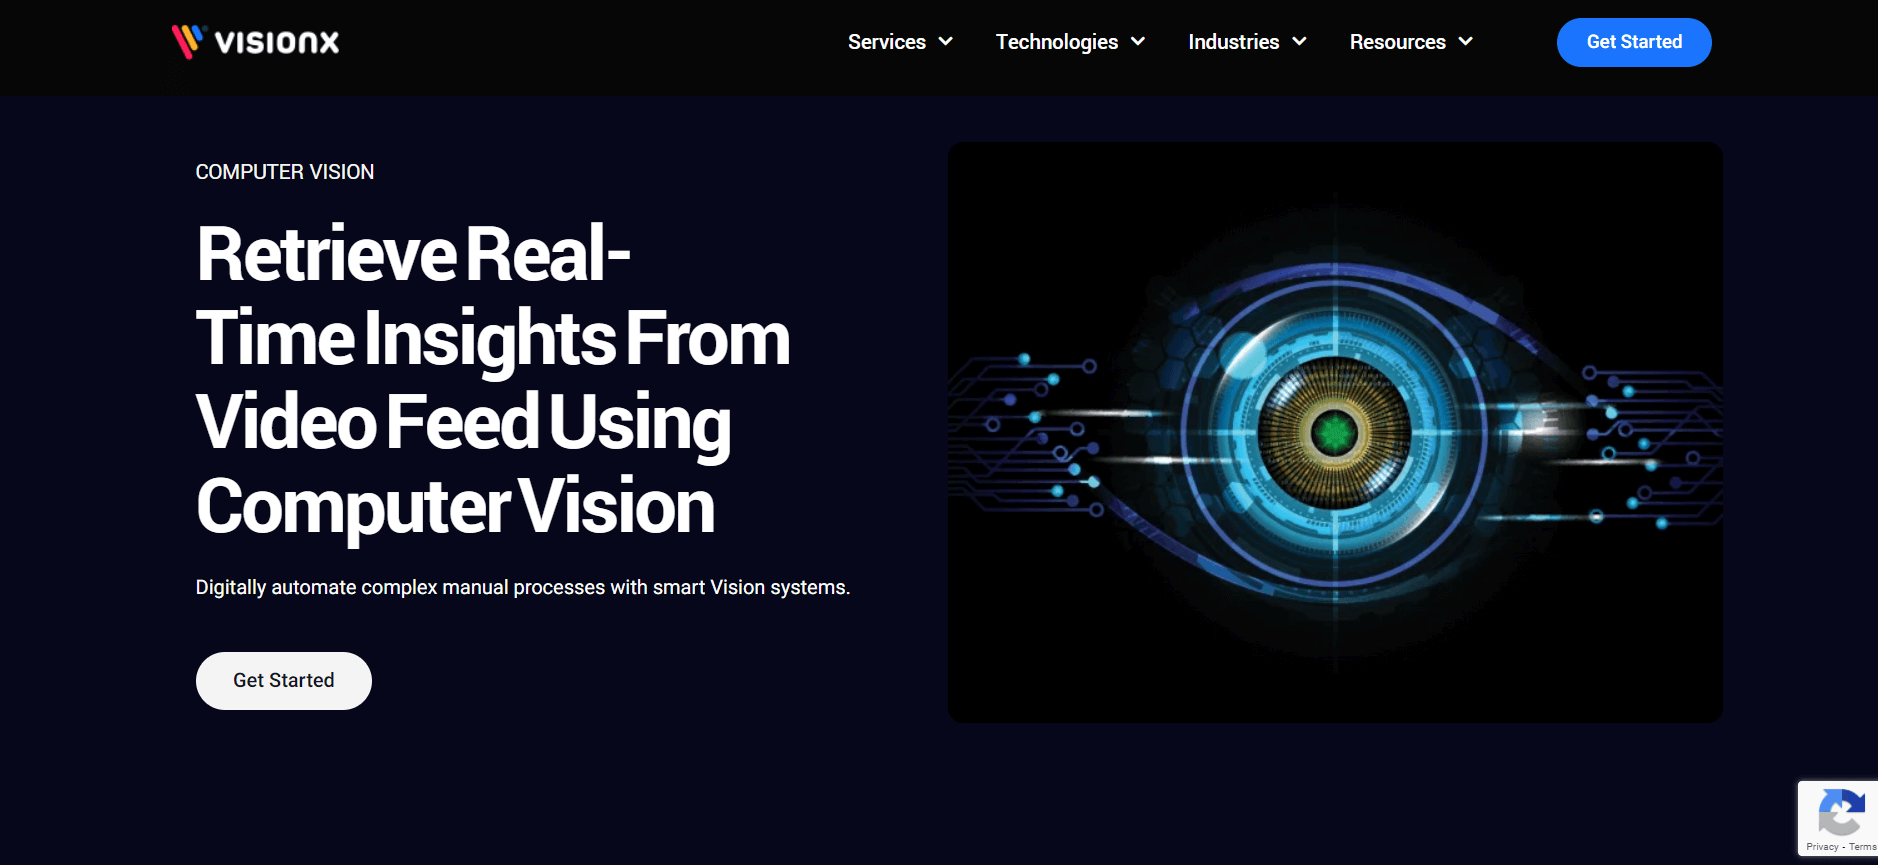 VisionX optimización del análisis de datos visuales